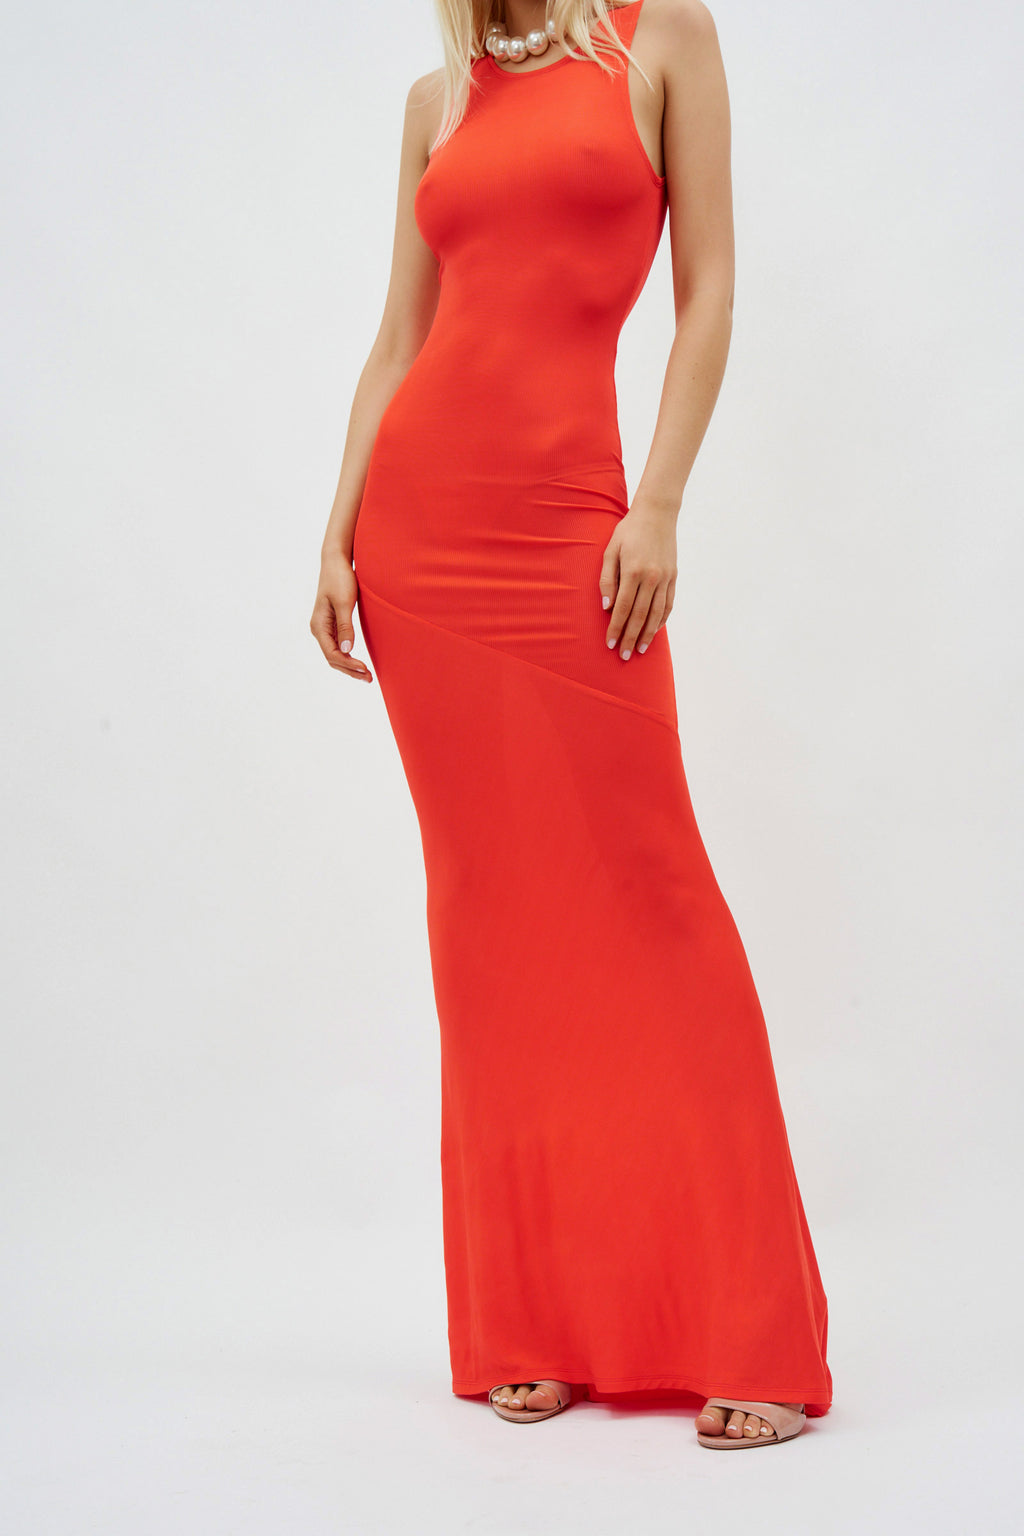 Sleeveless Bias Long Tangerine Red Dress